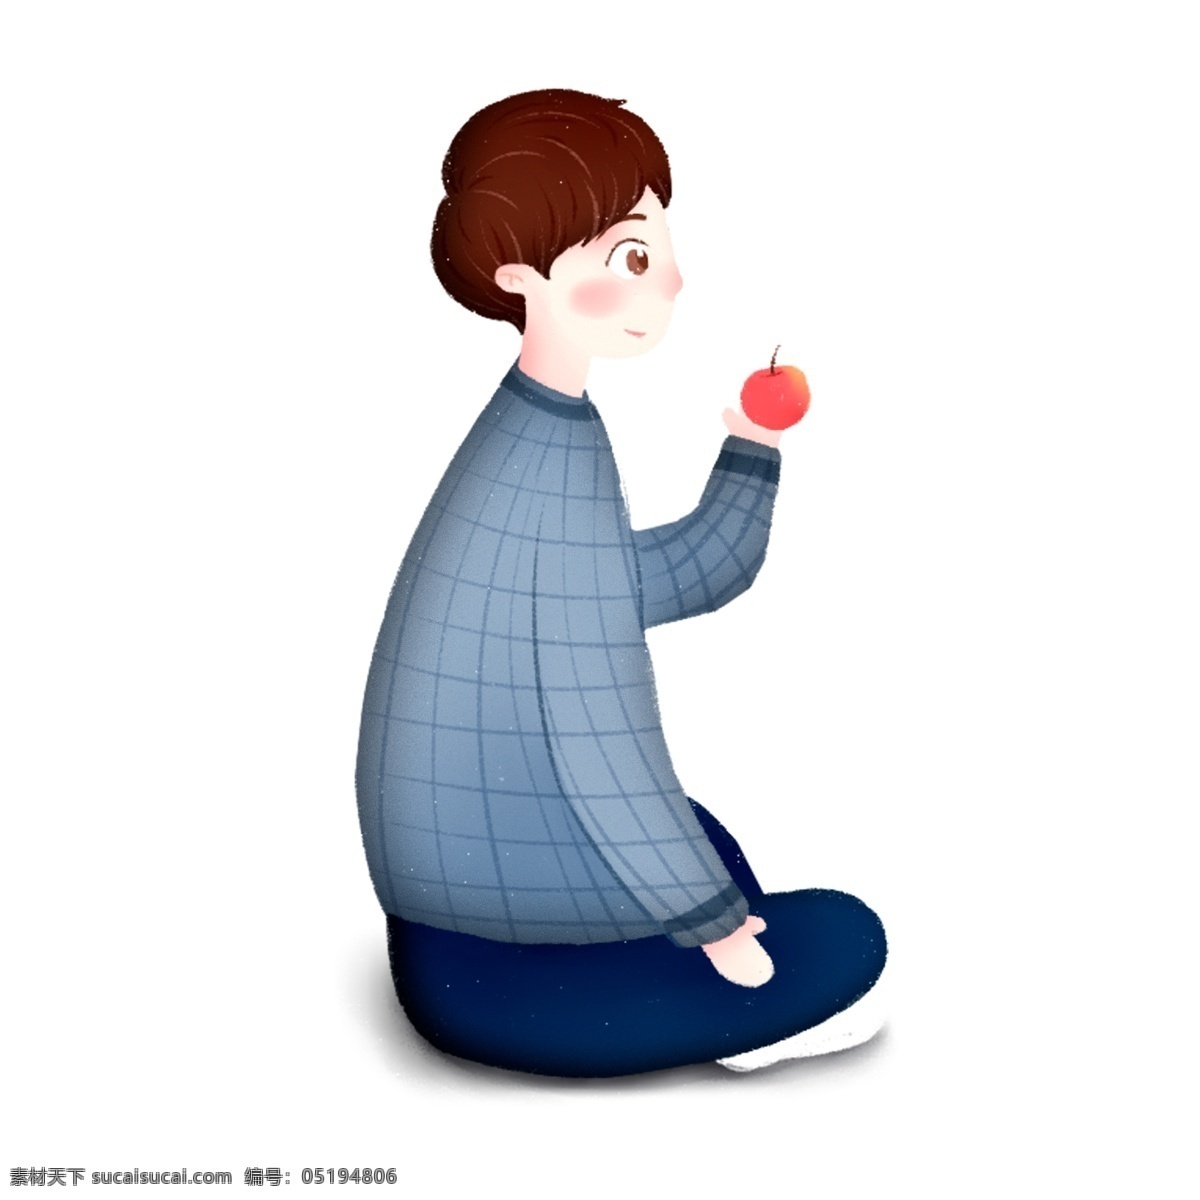 盘腿 坐 吃 苹果 男生 清新 圣诞节 人物 插画 平安夜 吃苹果 卡通手绘